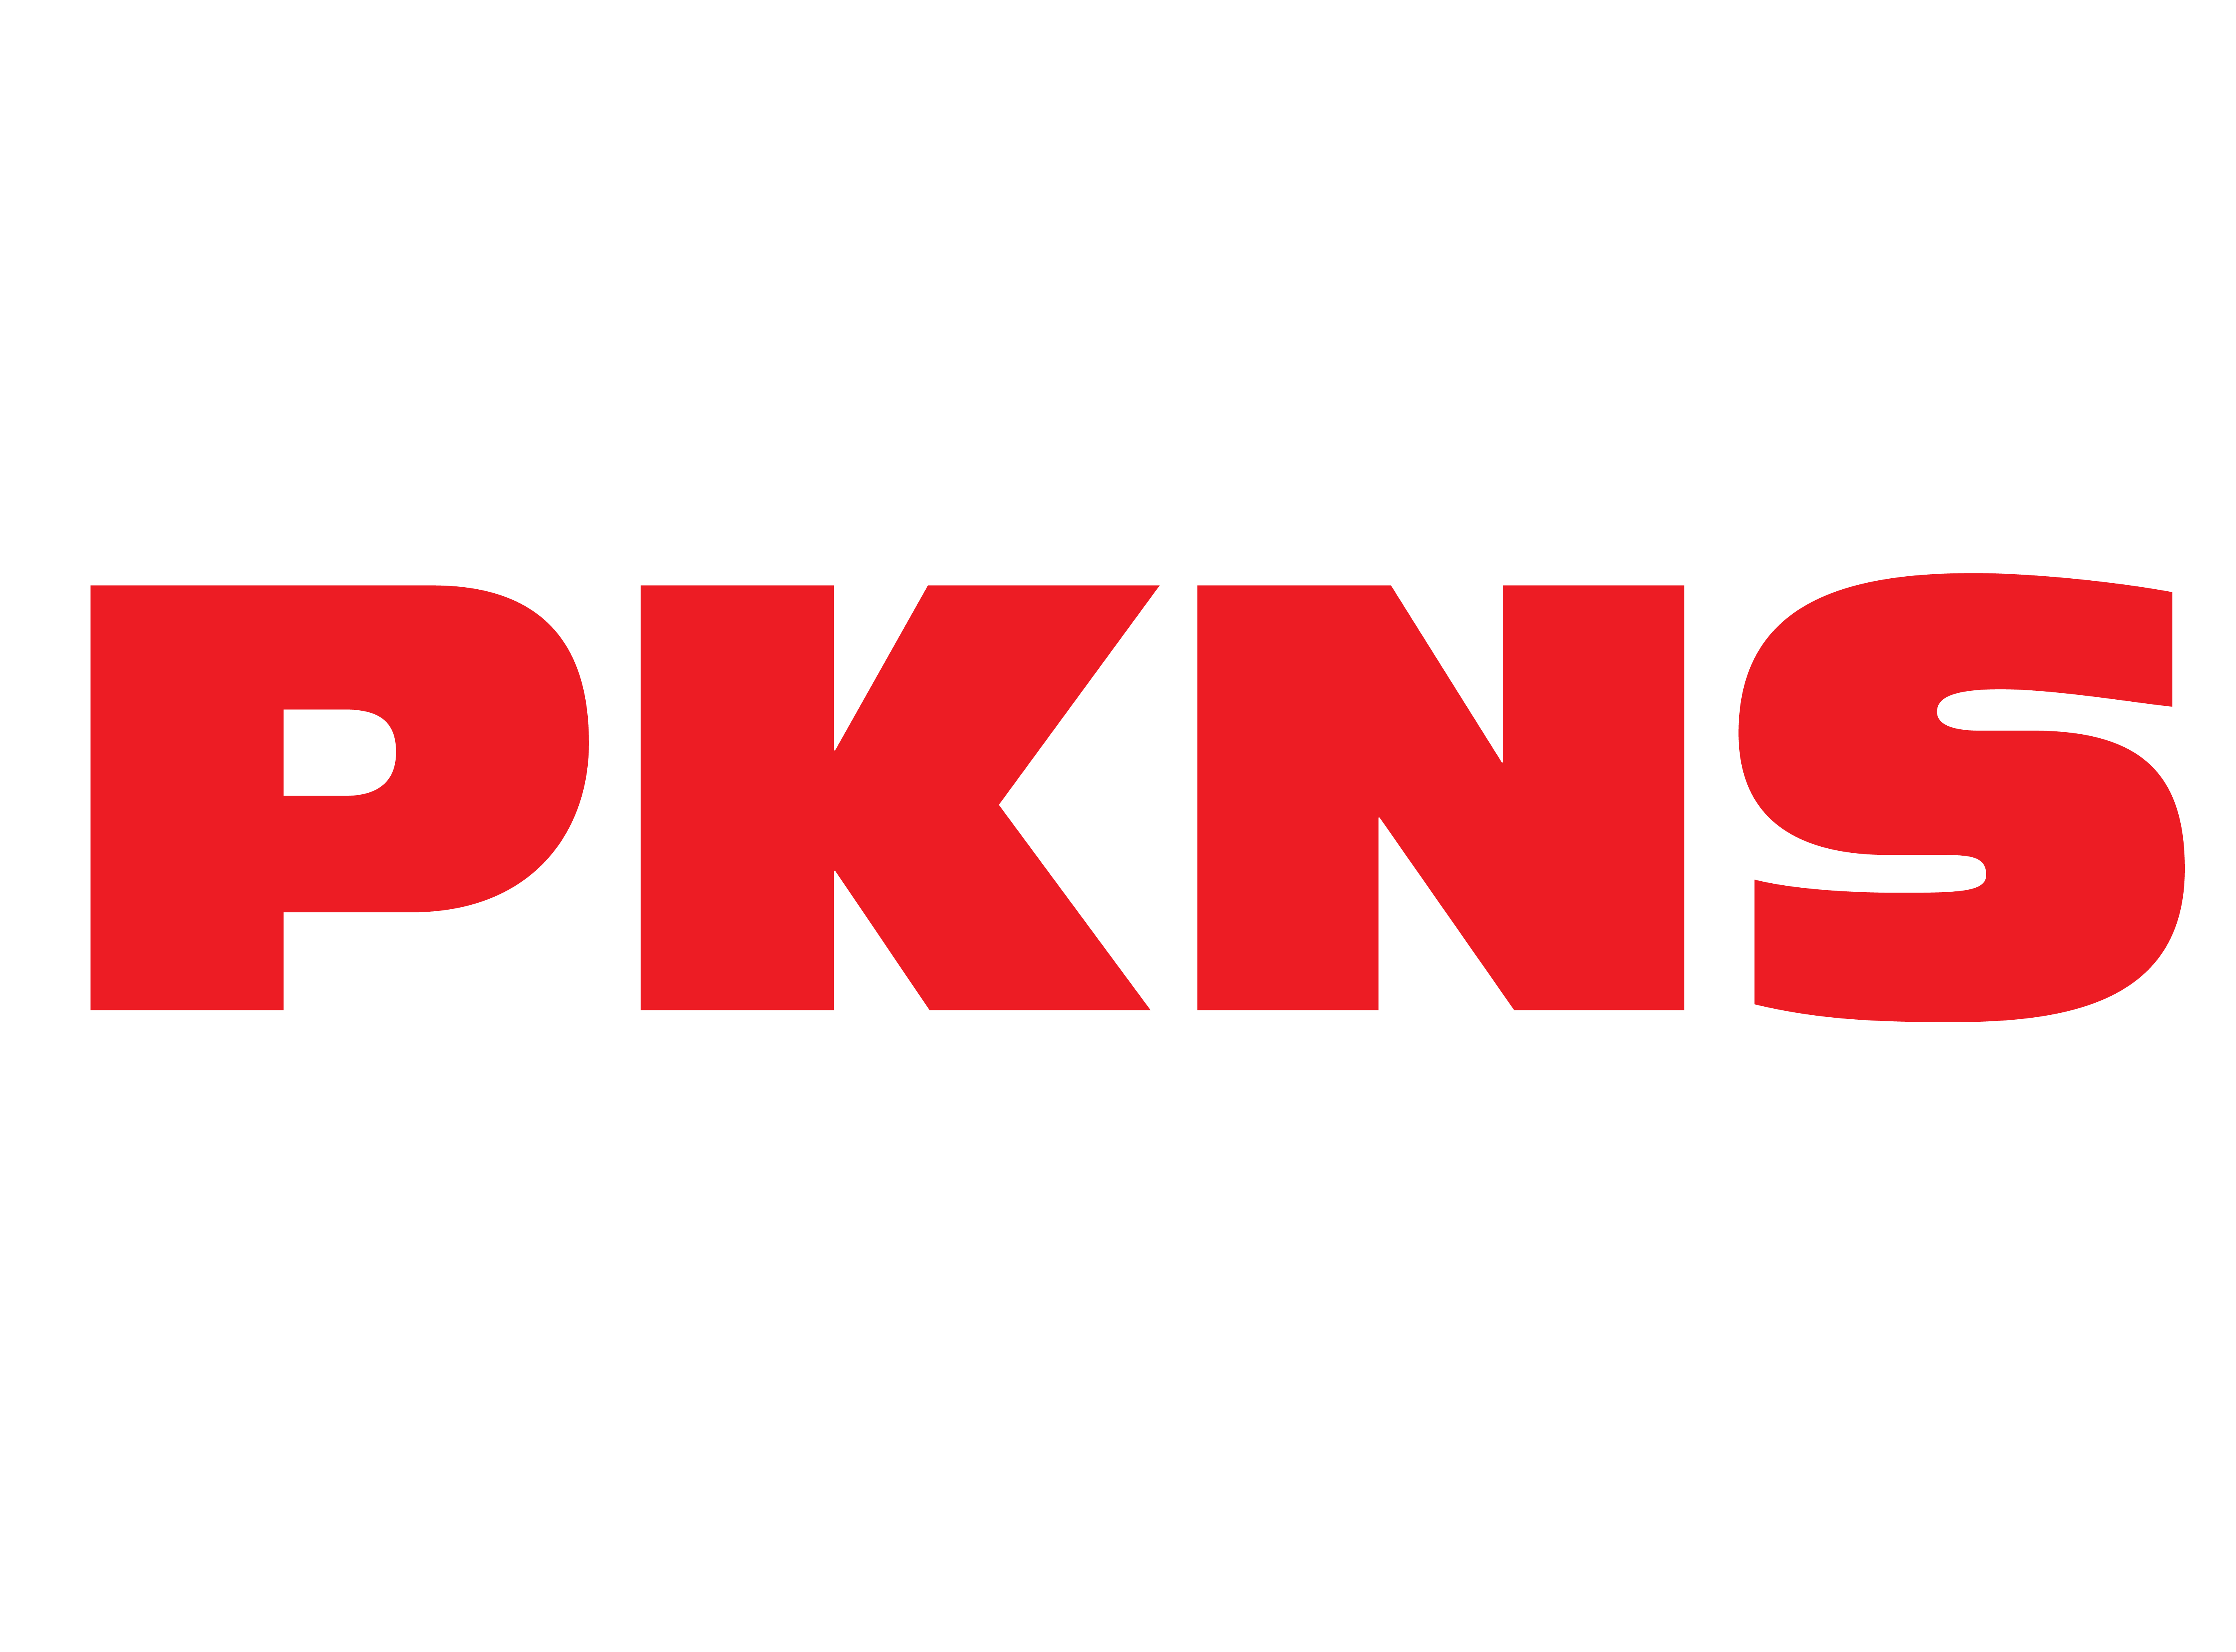 PKNS Logo Booth OCT